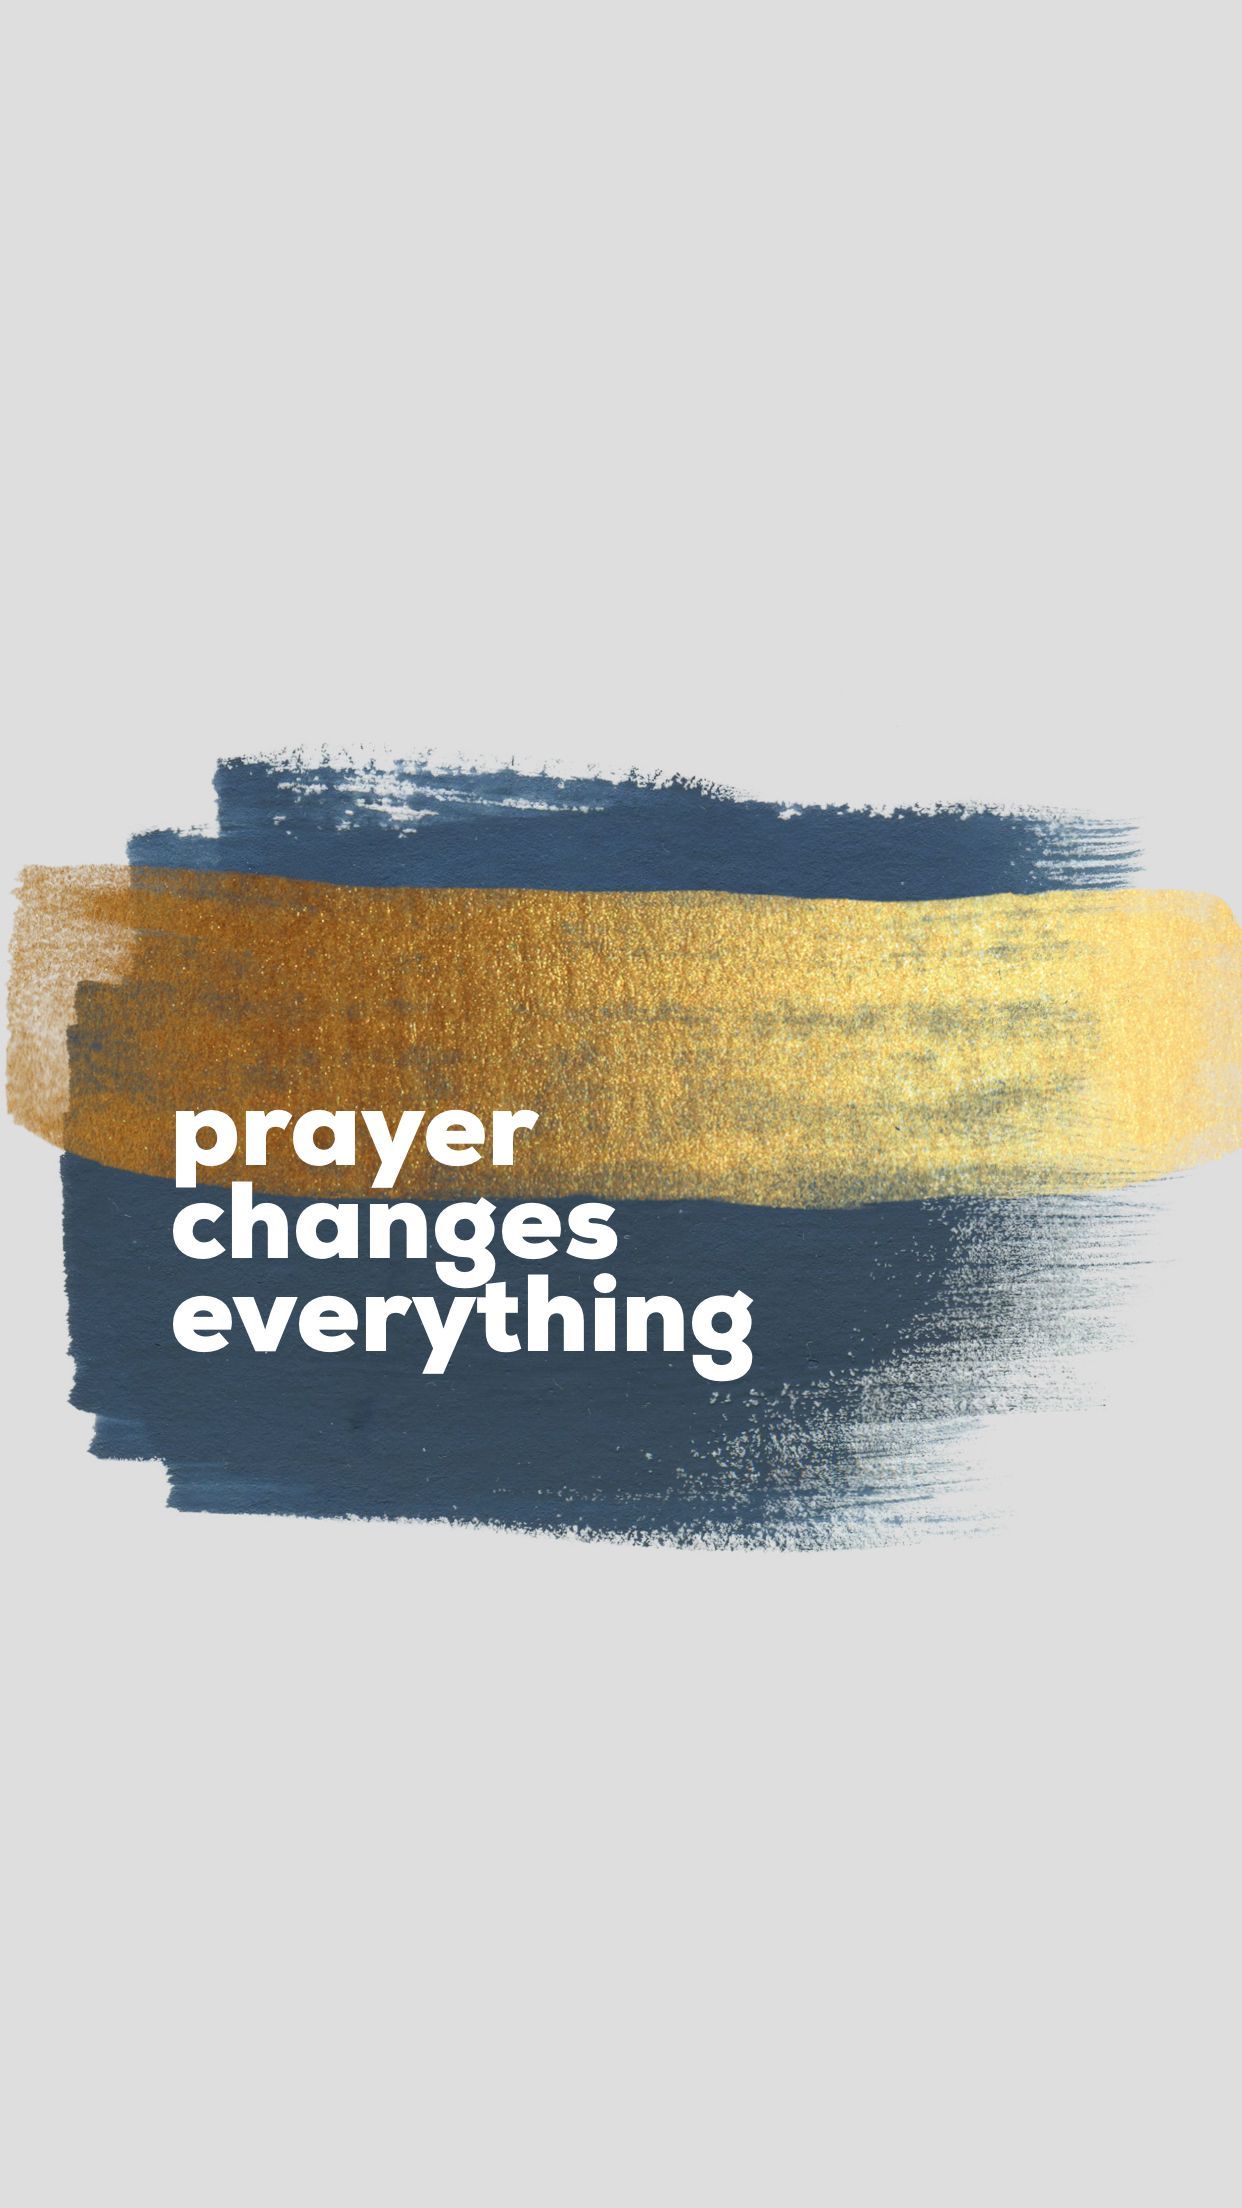 Prayer” wallpaper for iPhone in blue. Prayer